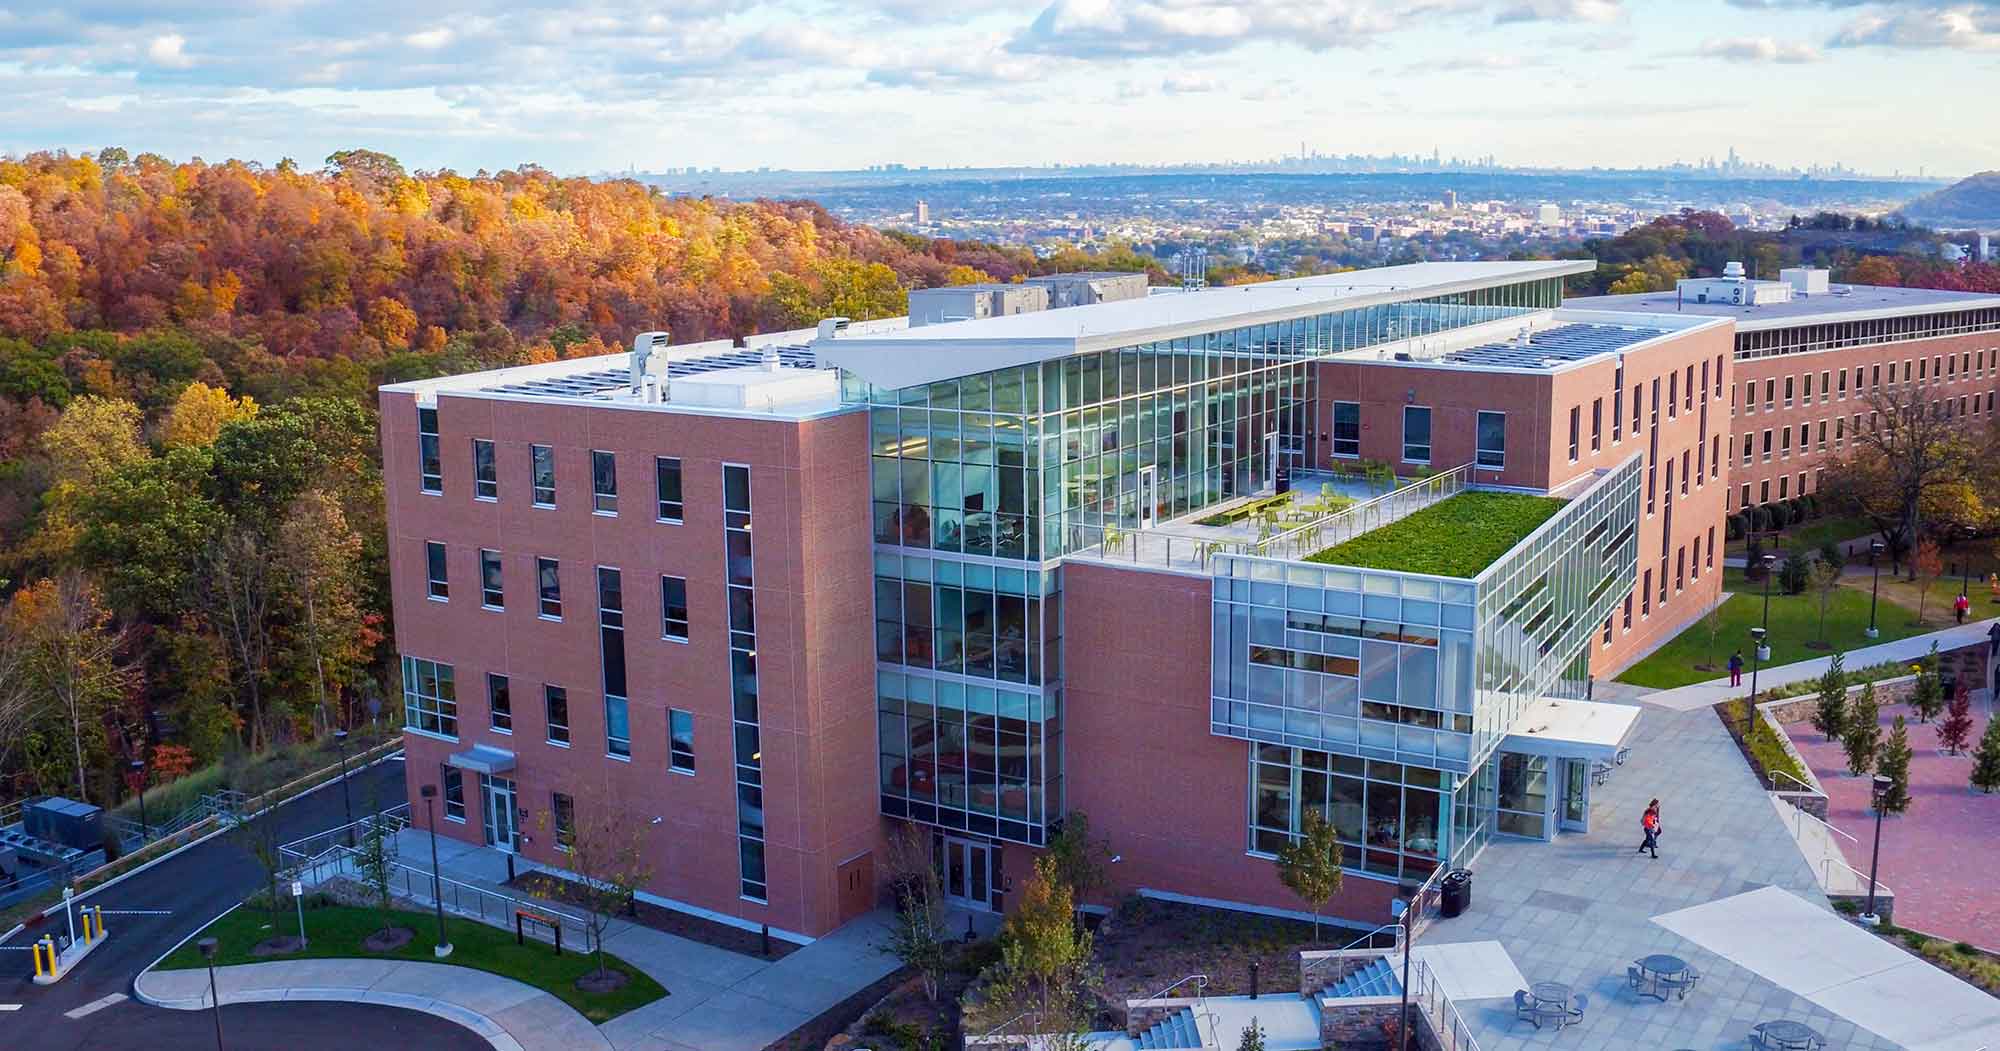 Aerial View Of William Paterson University William Paterson